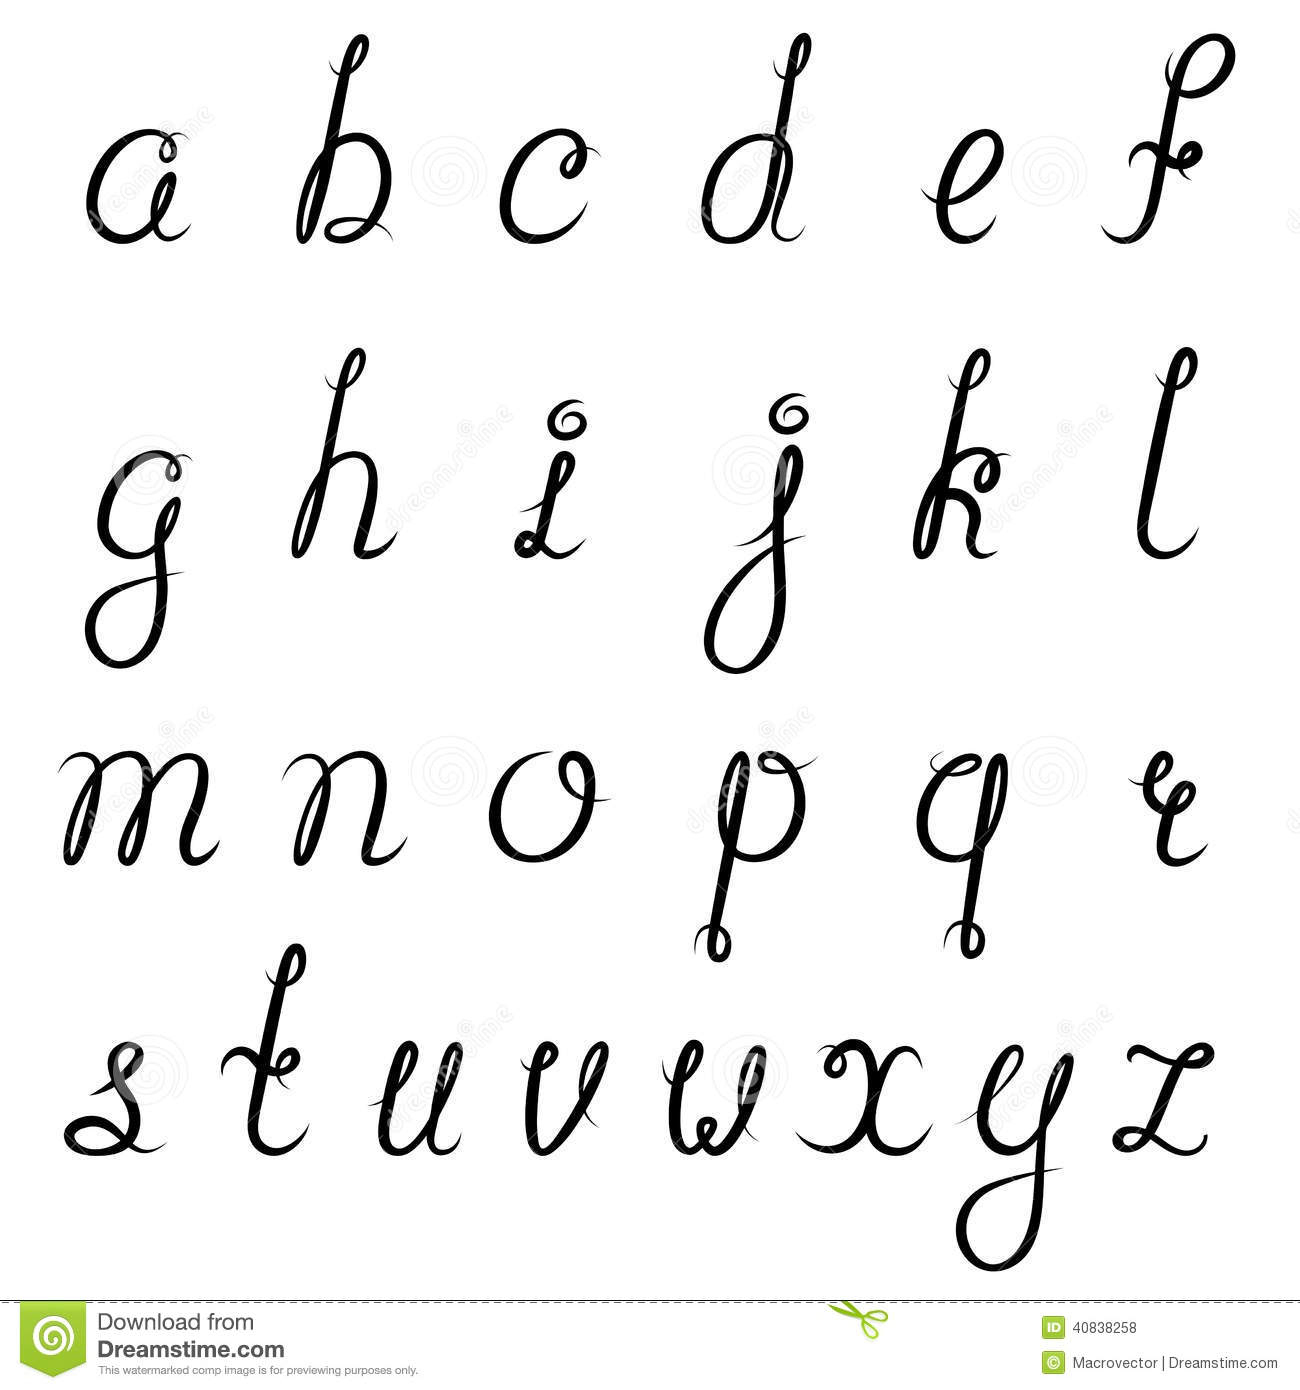 Noir D'alphabet De Calligraphie Illustration De Vecteur dedans Modele Calligraphie Alphabet Gratuit